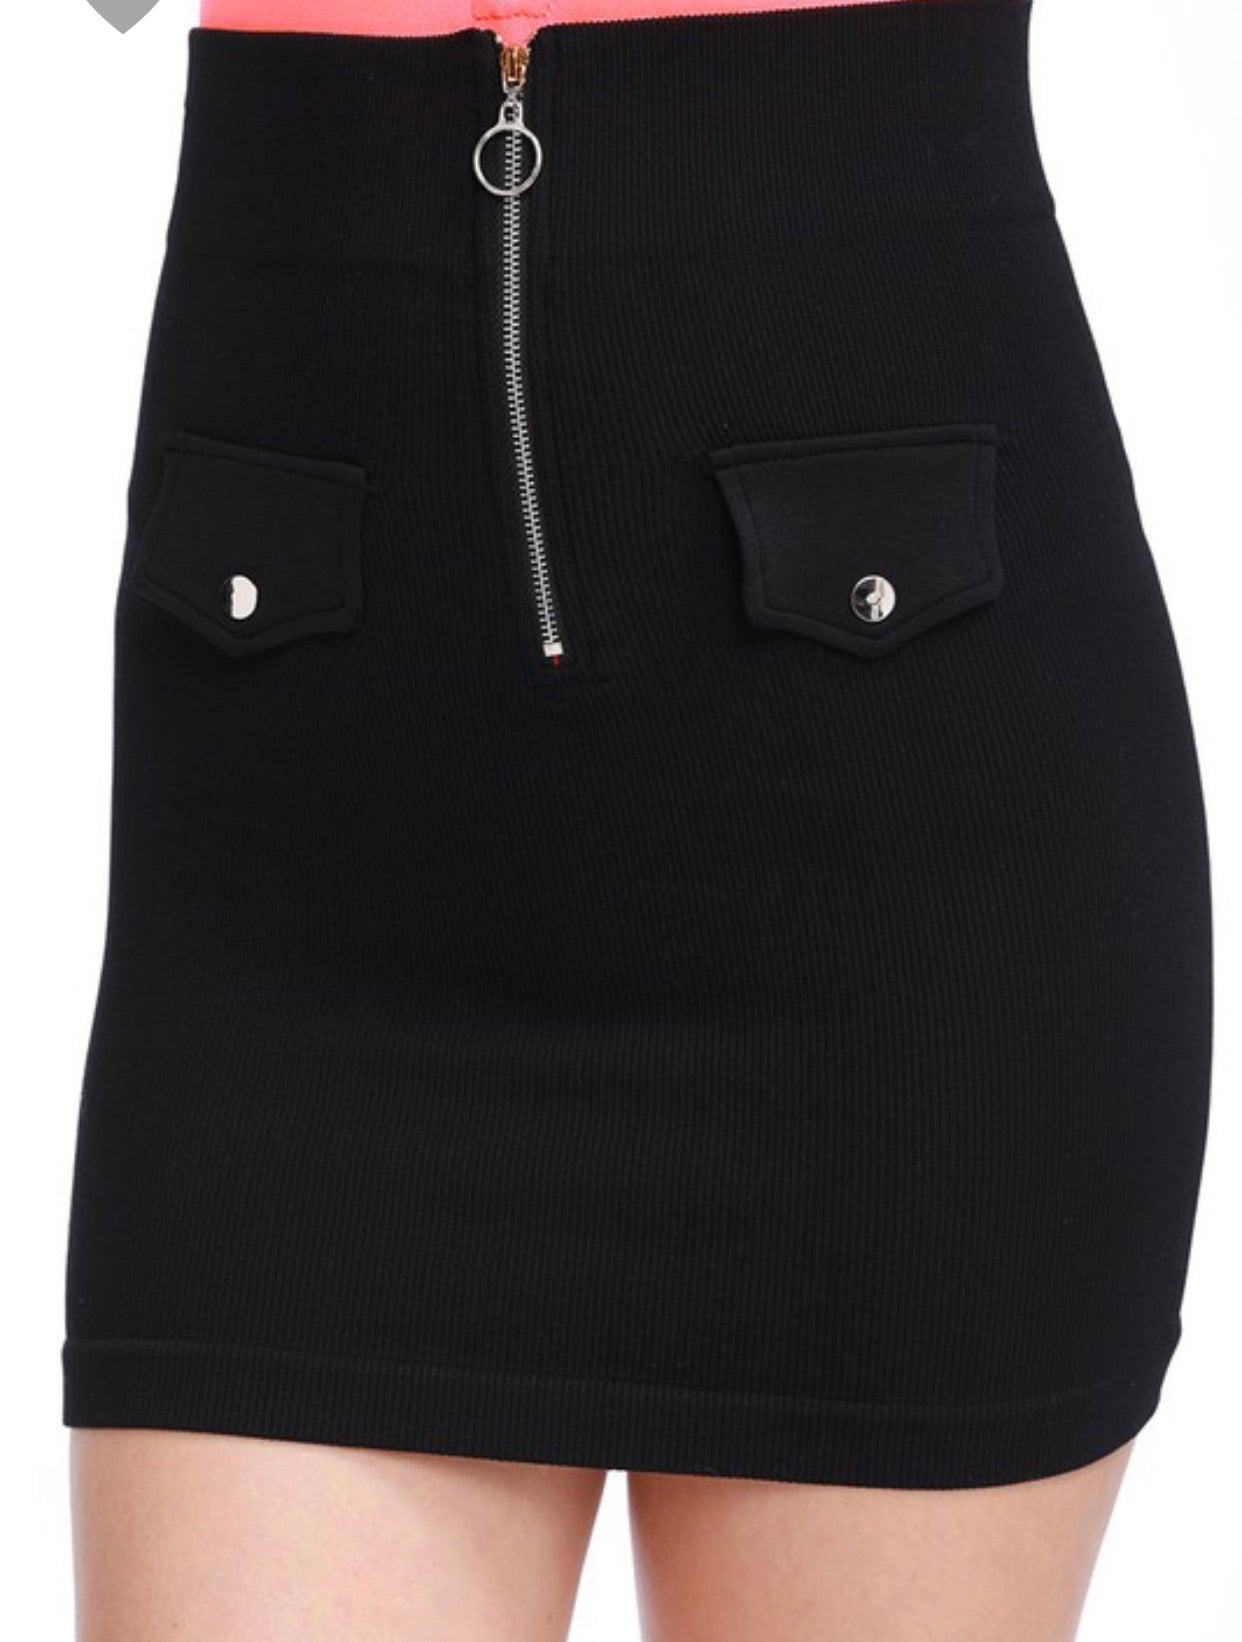 Little black skirt